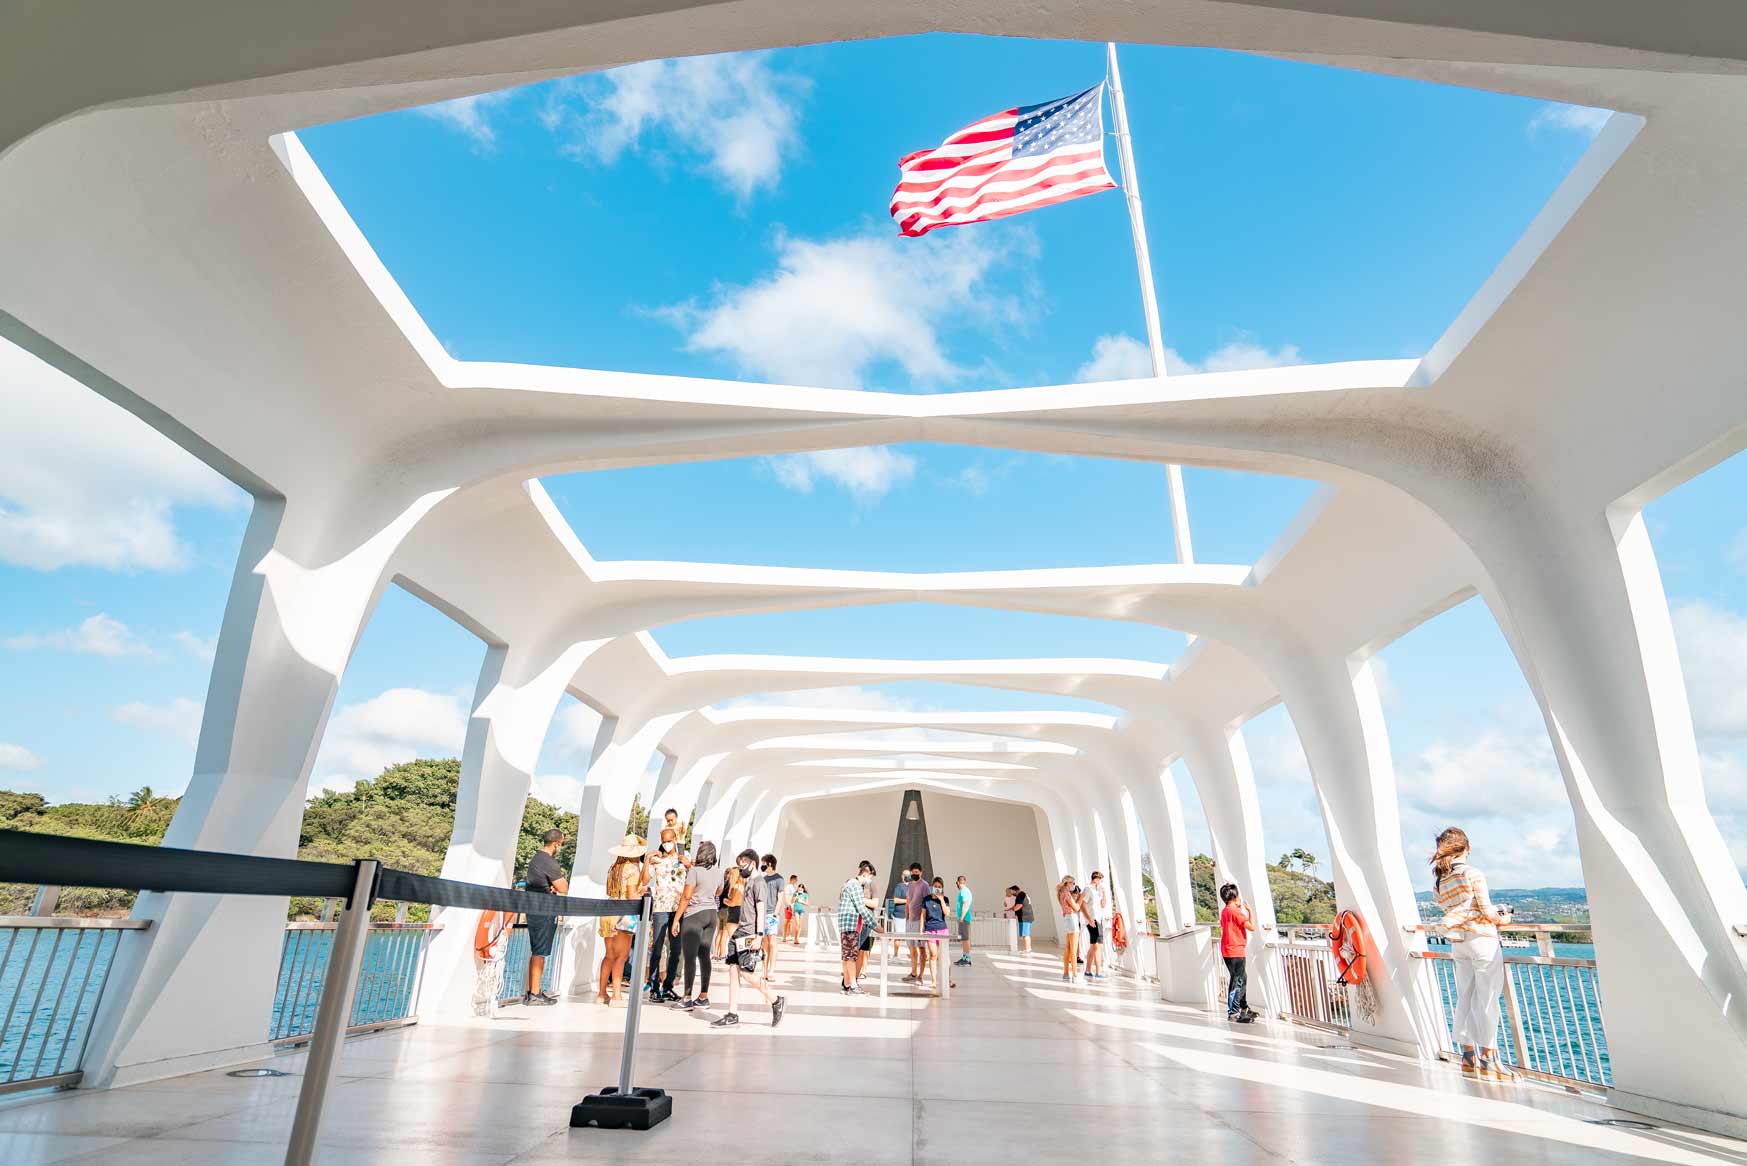 pearl harbor national memorial, oahu, hawaii